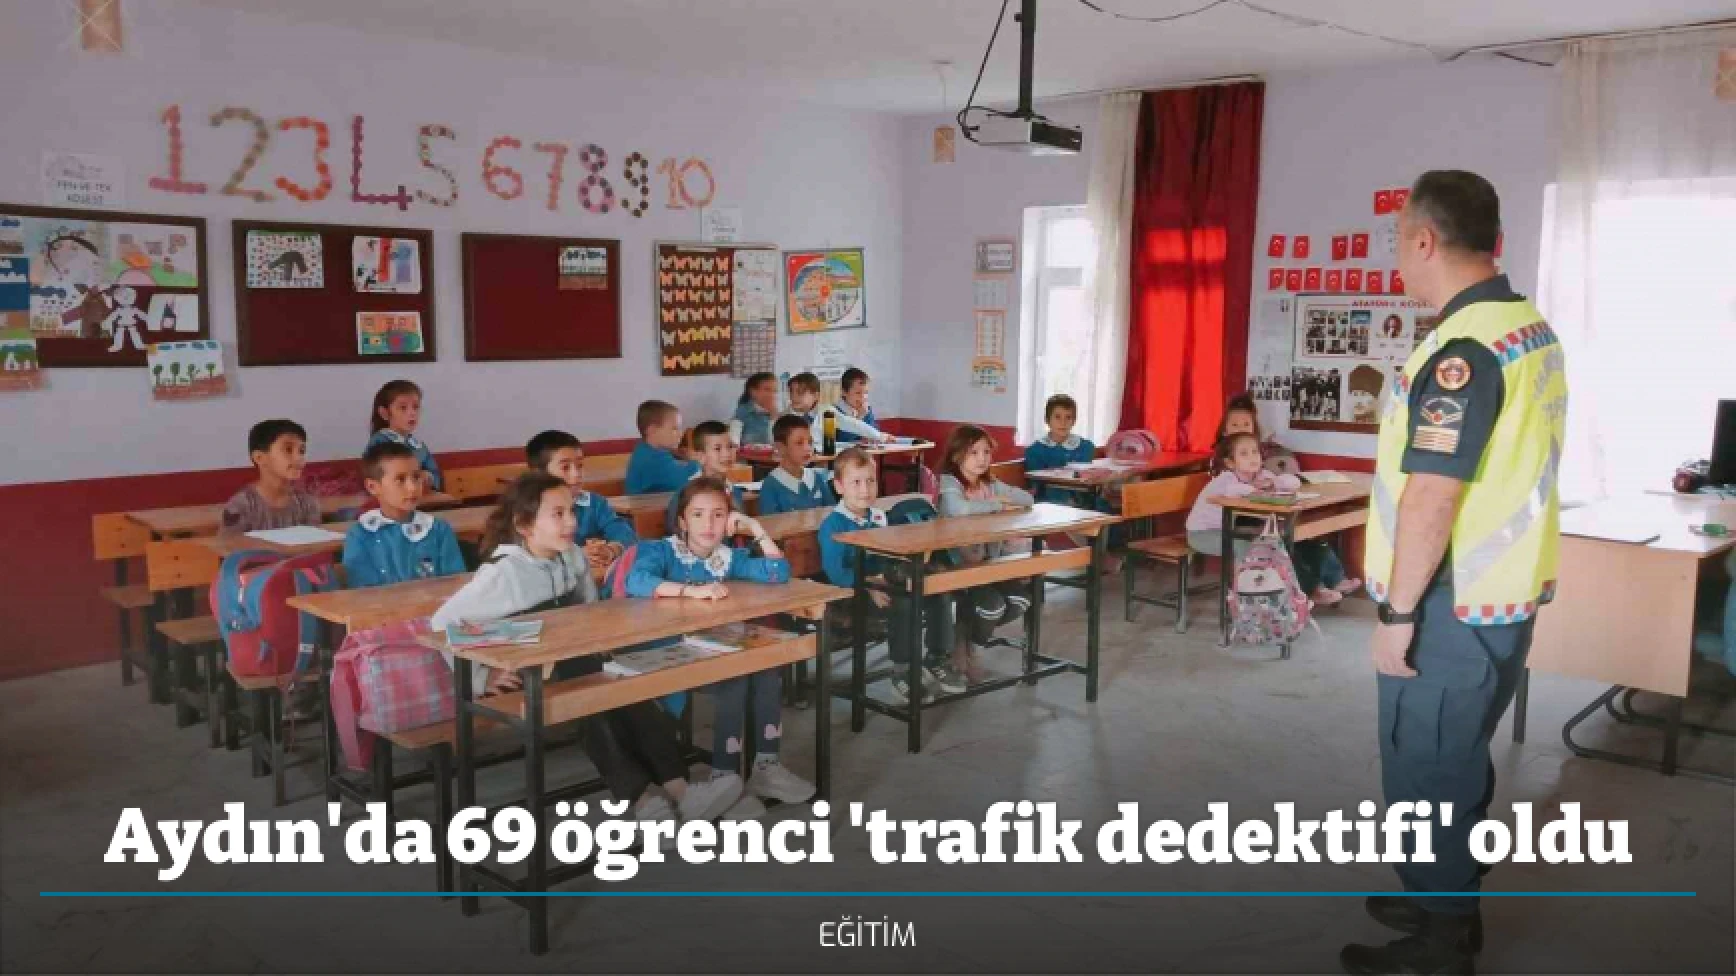 Aydın'da 69 öğrenci 'trafik dedektifi' oldu